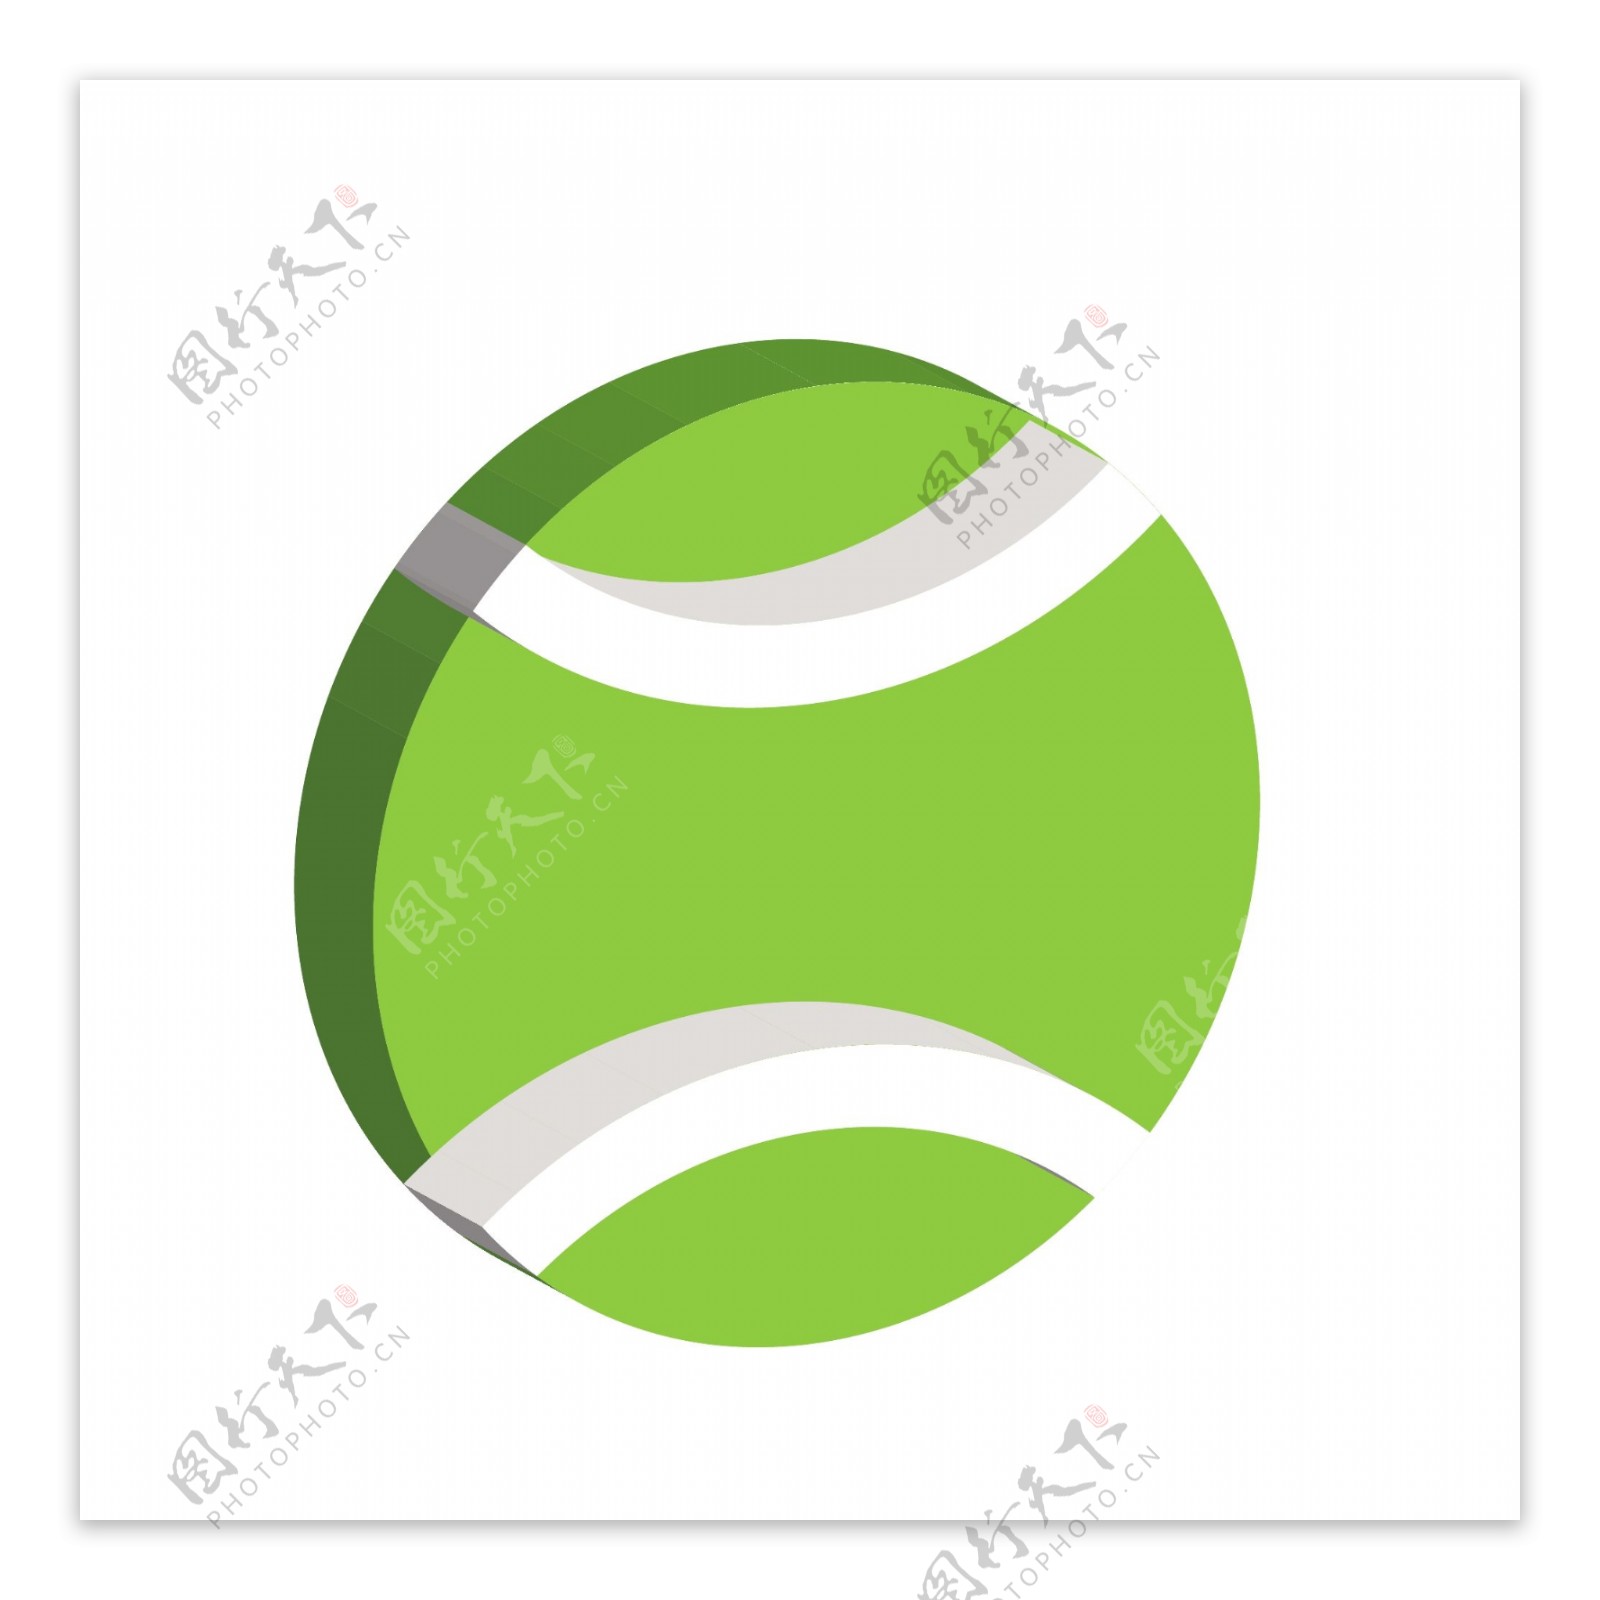 绿色运动网球2.5D兴趣爱好图标